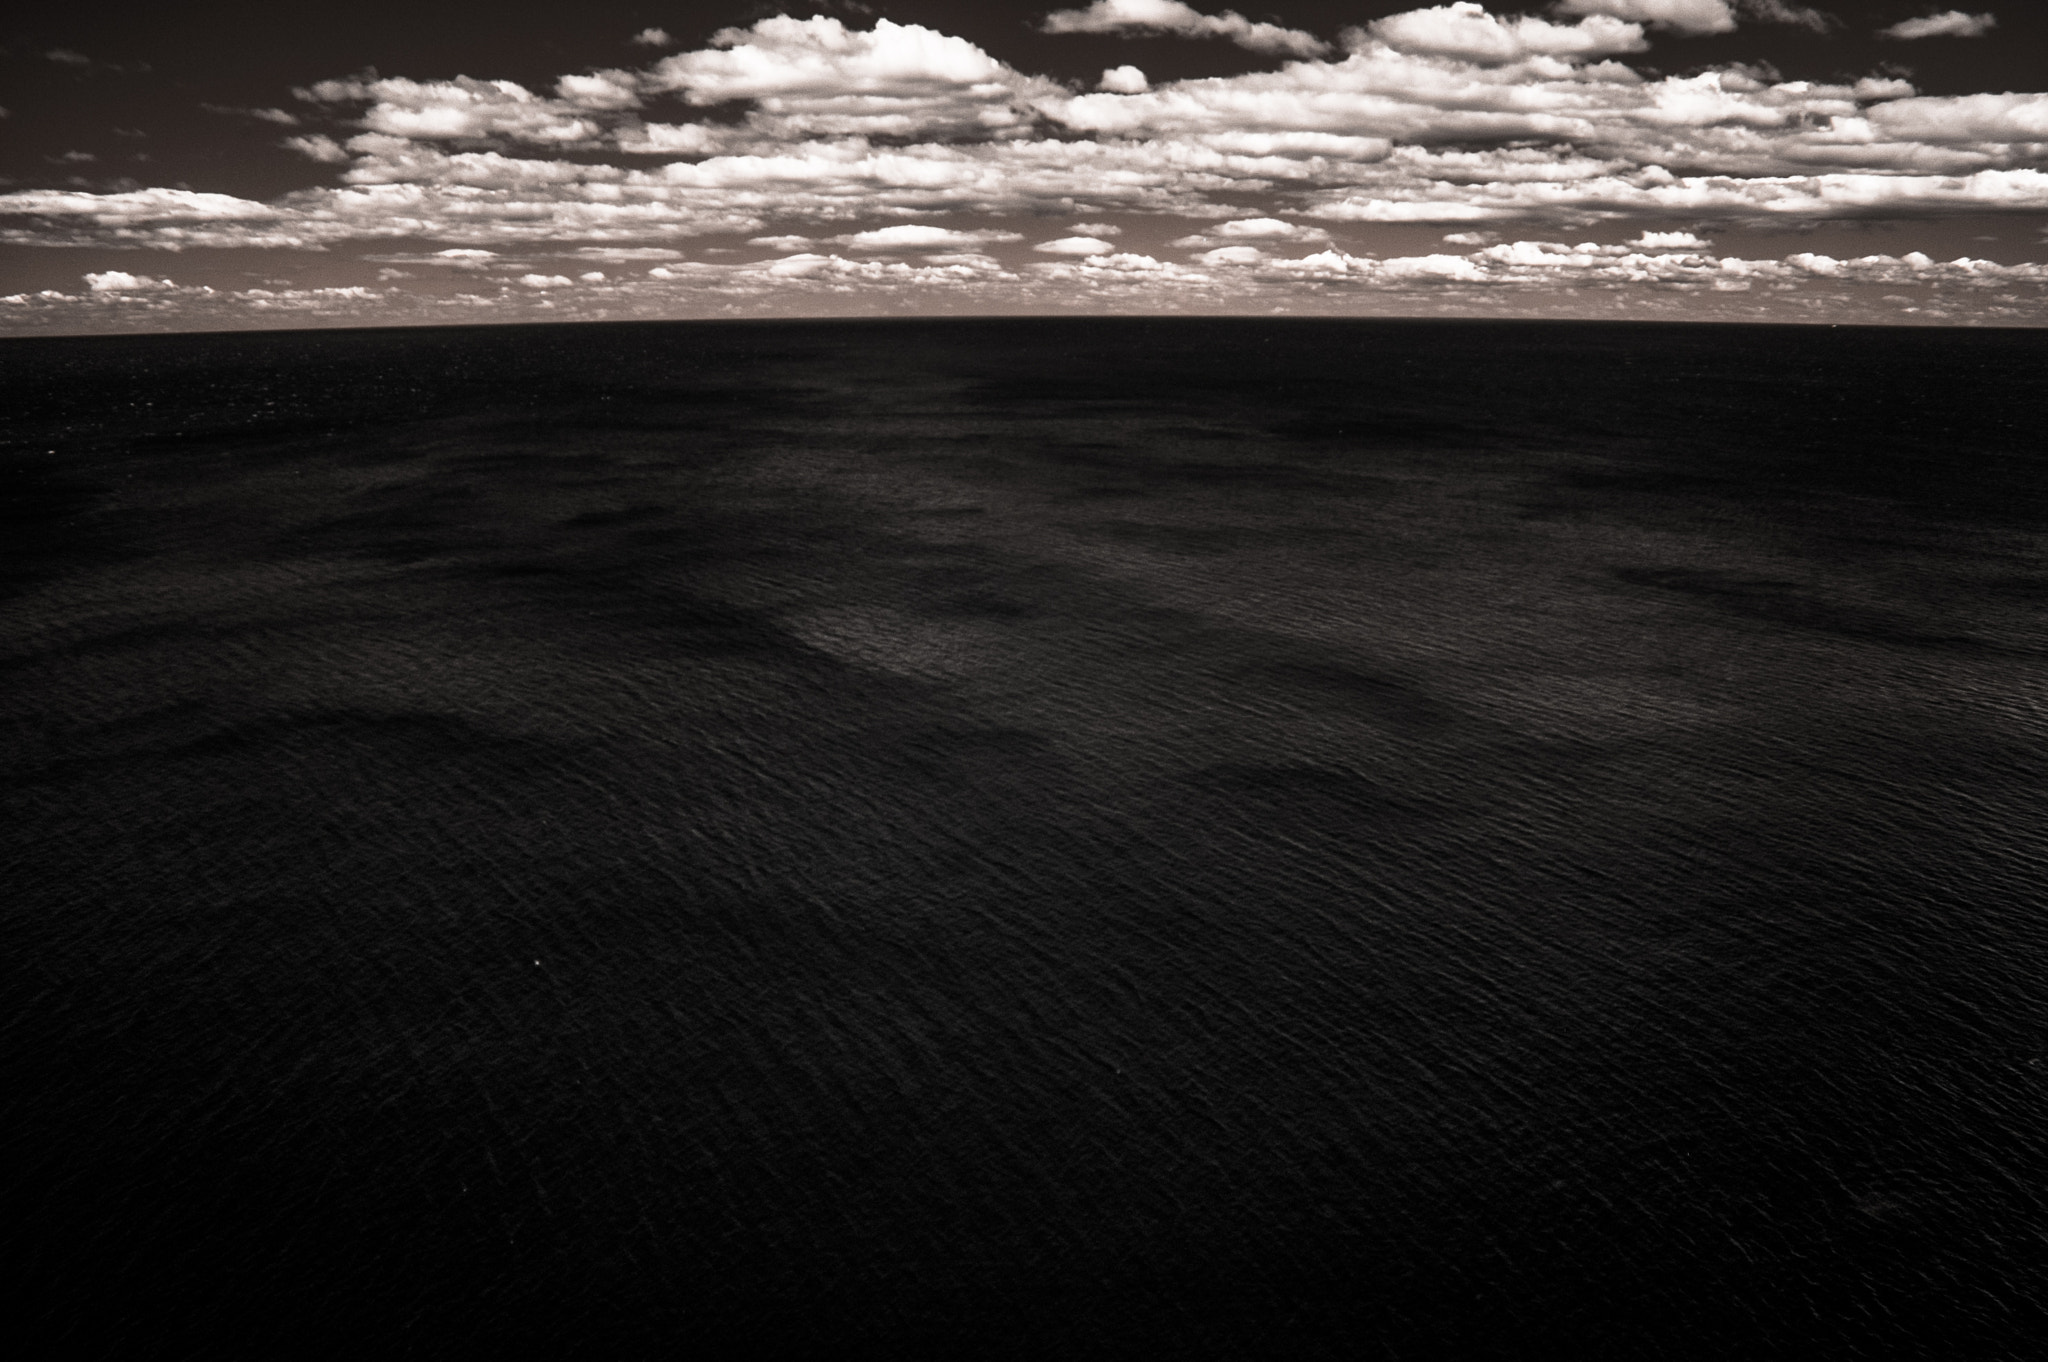 Nikon D70 sample photo. Infrared ocean photography